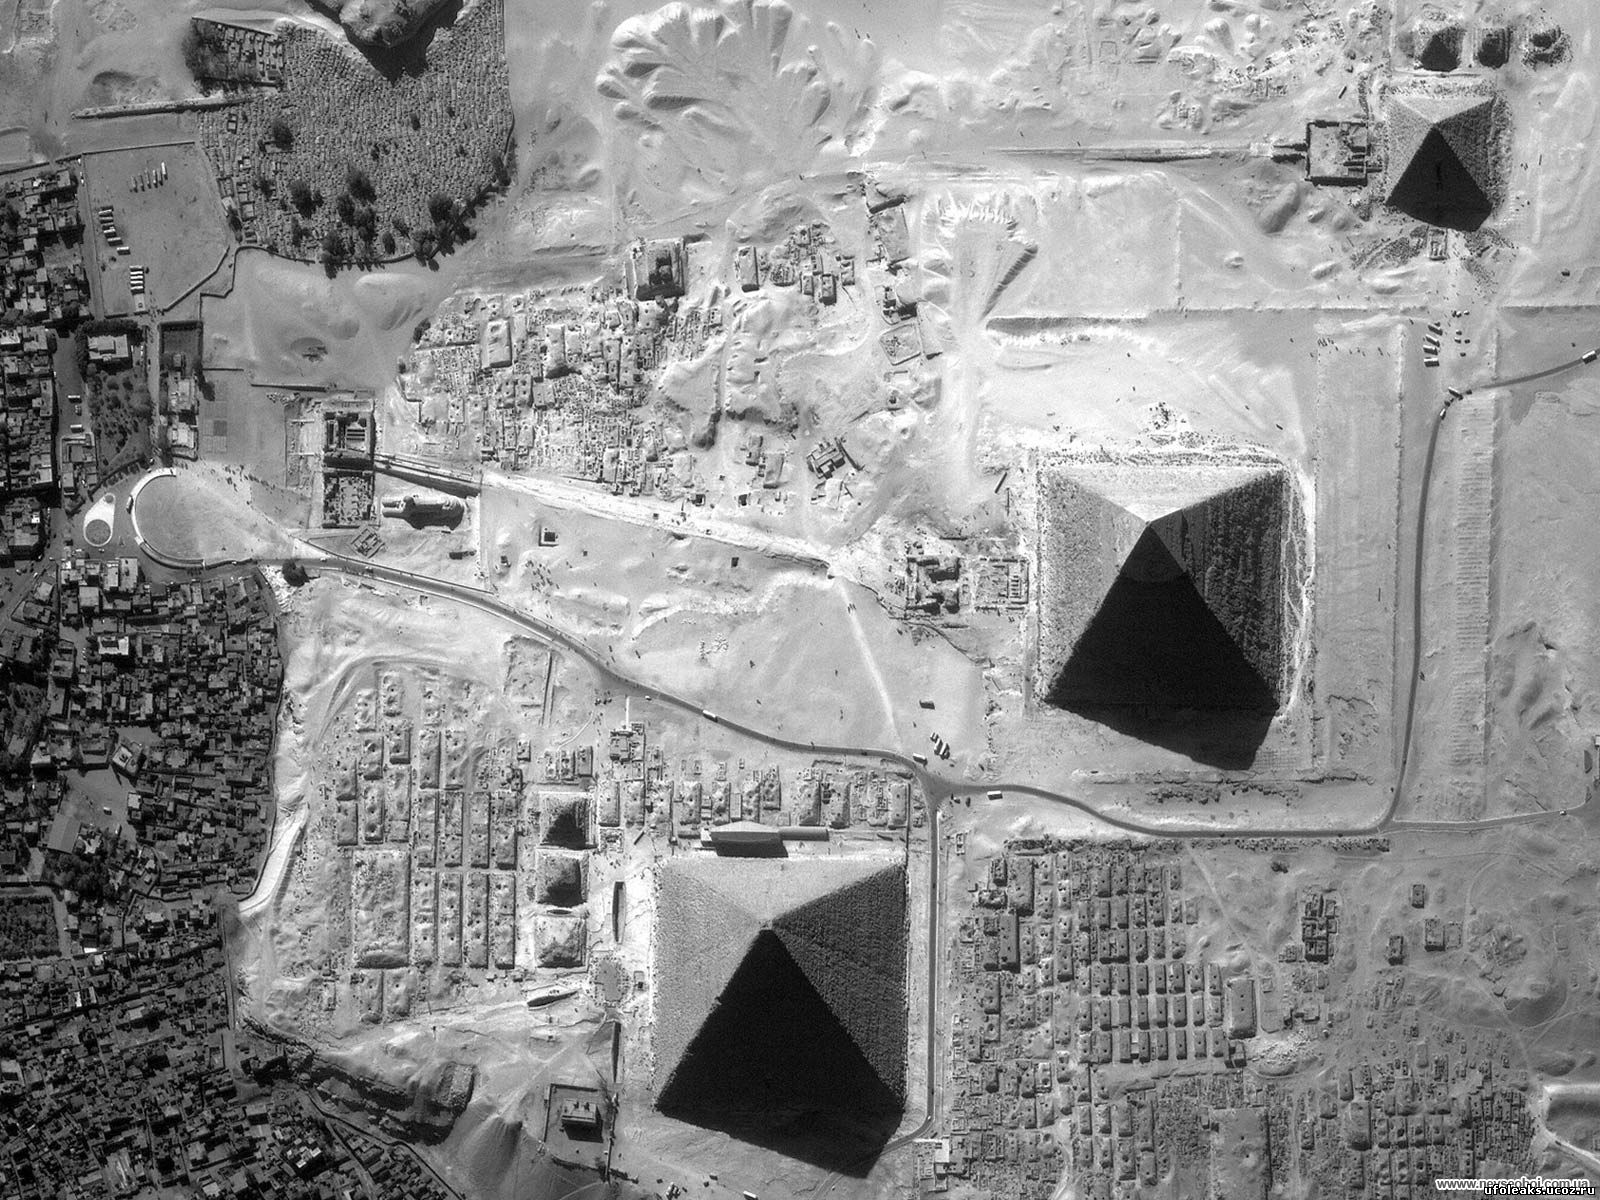 Египетские пирамиды из космоса